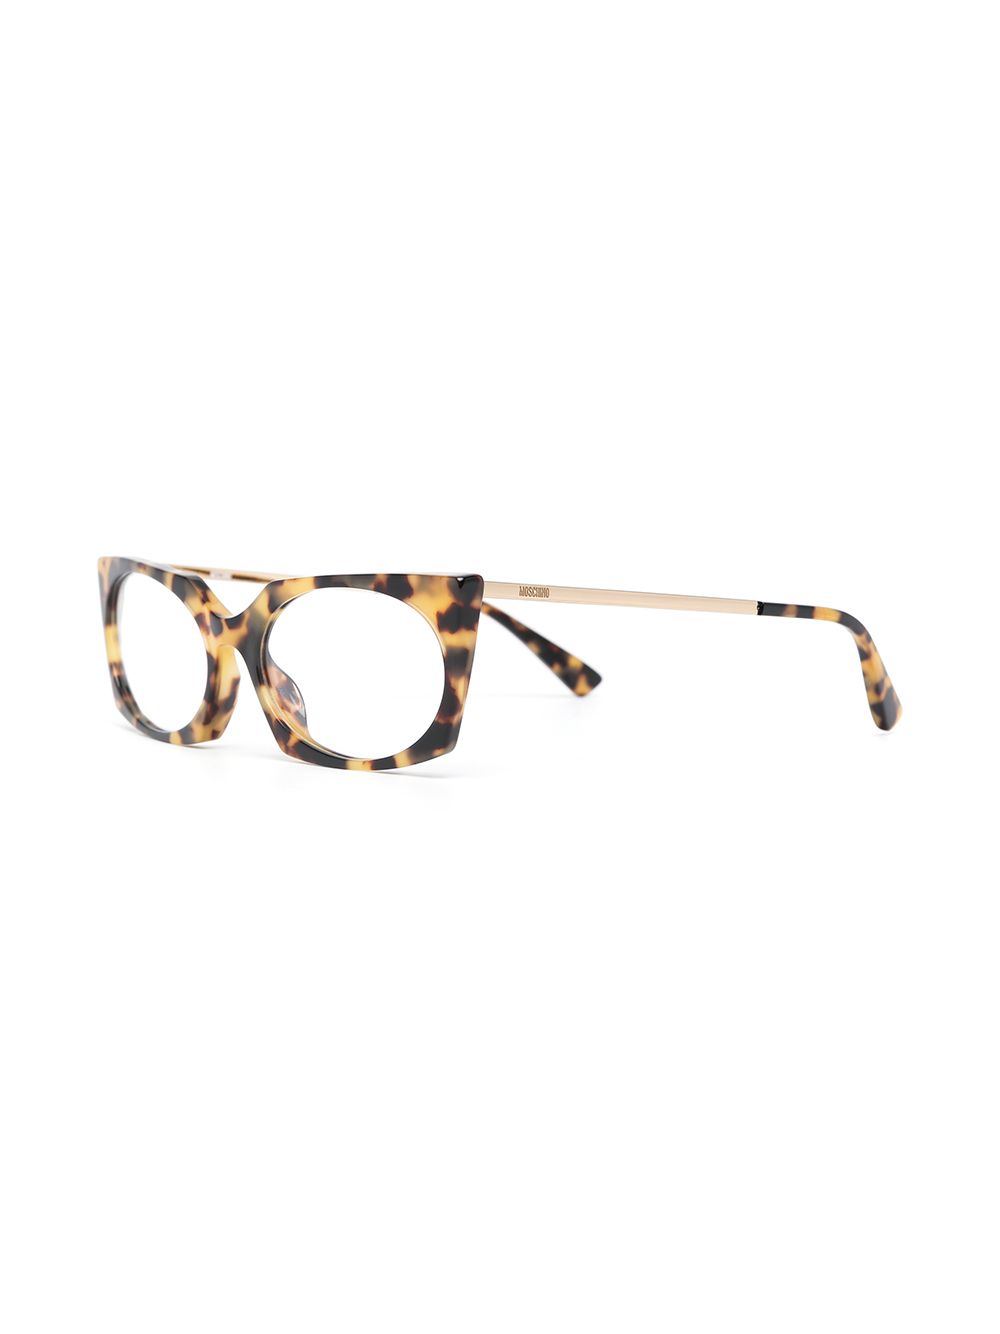 фото Moschino eyewear очки в оправе 'кошачий глаз' черепаховой расцветки